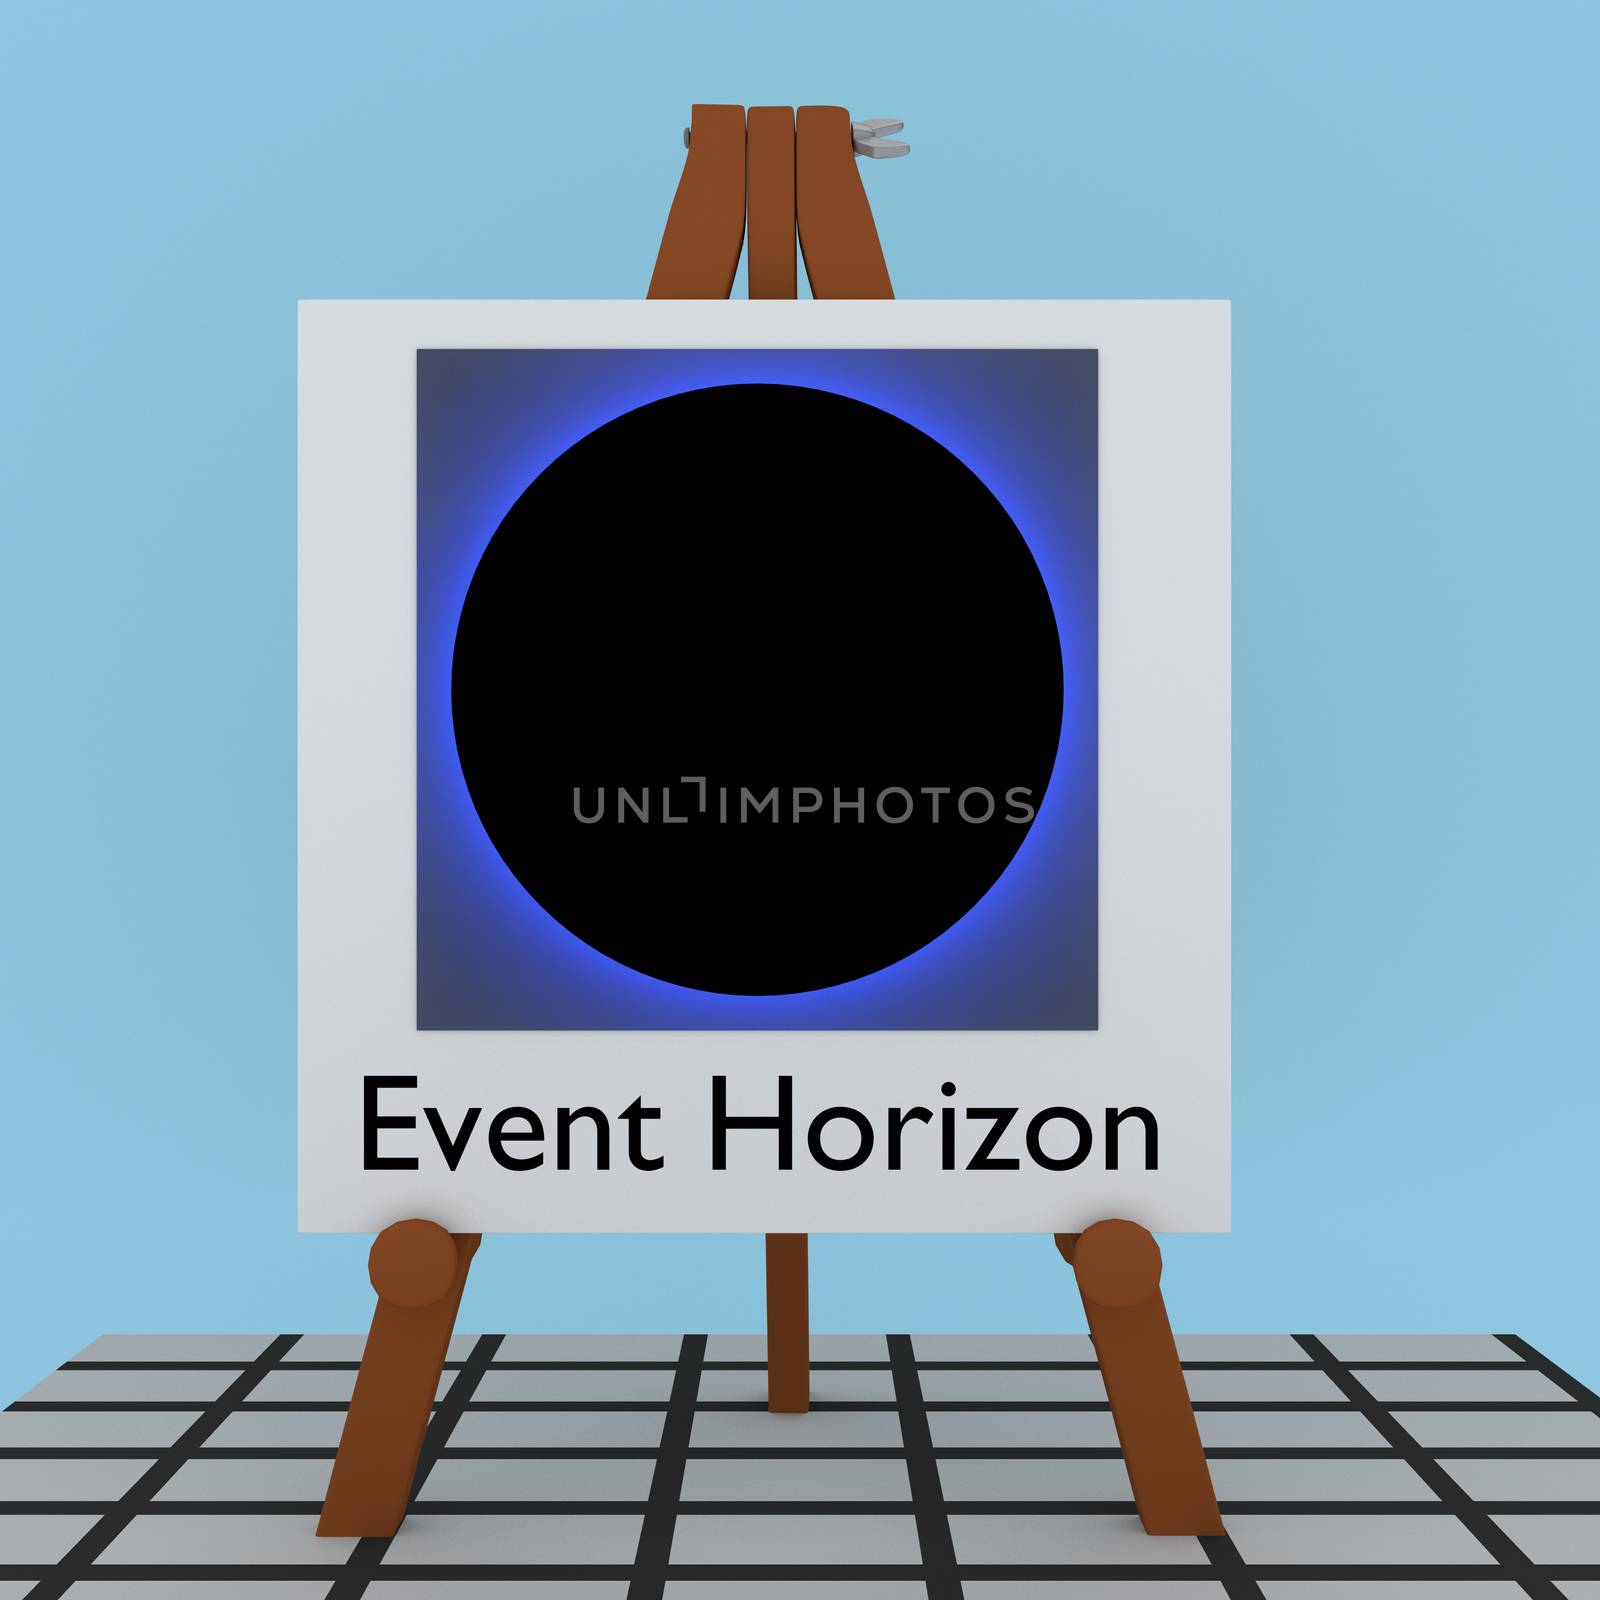 Event Horizon concept by HD_premium_shots